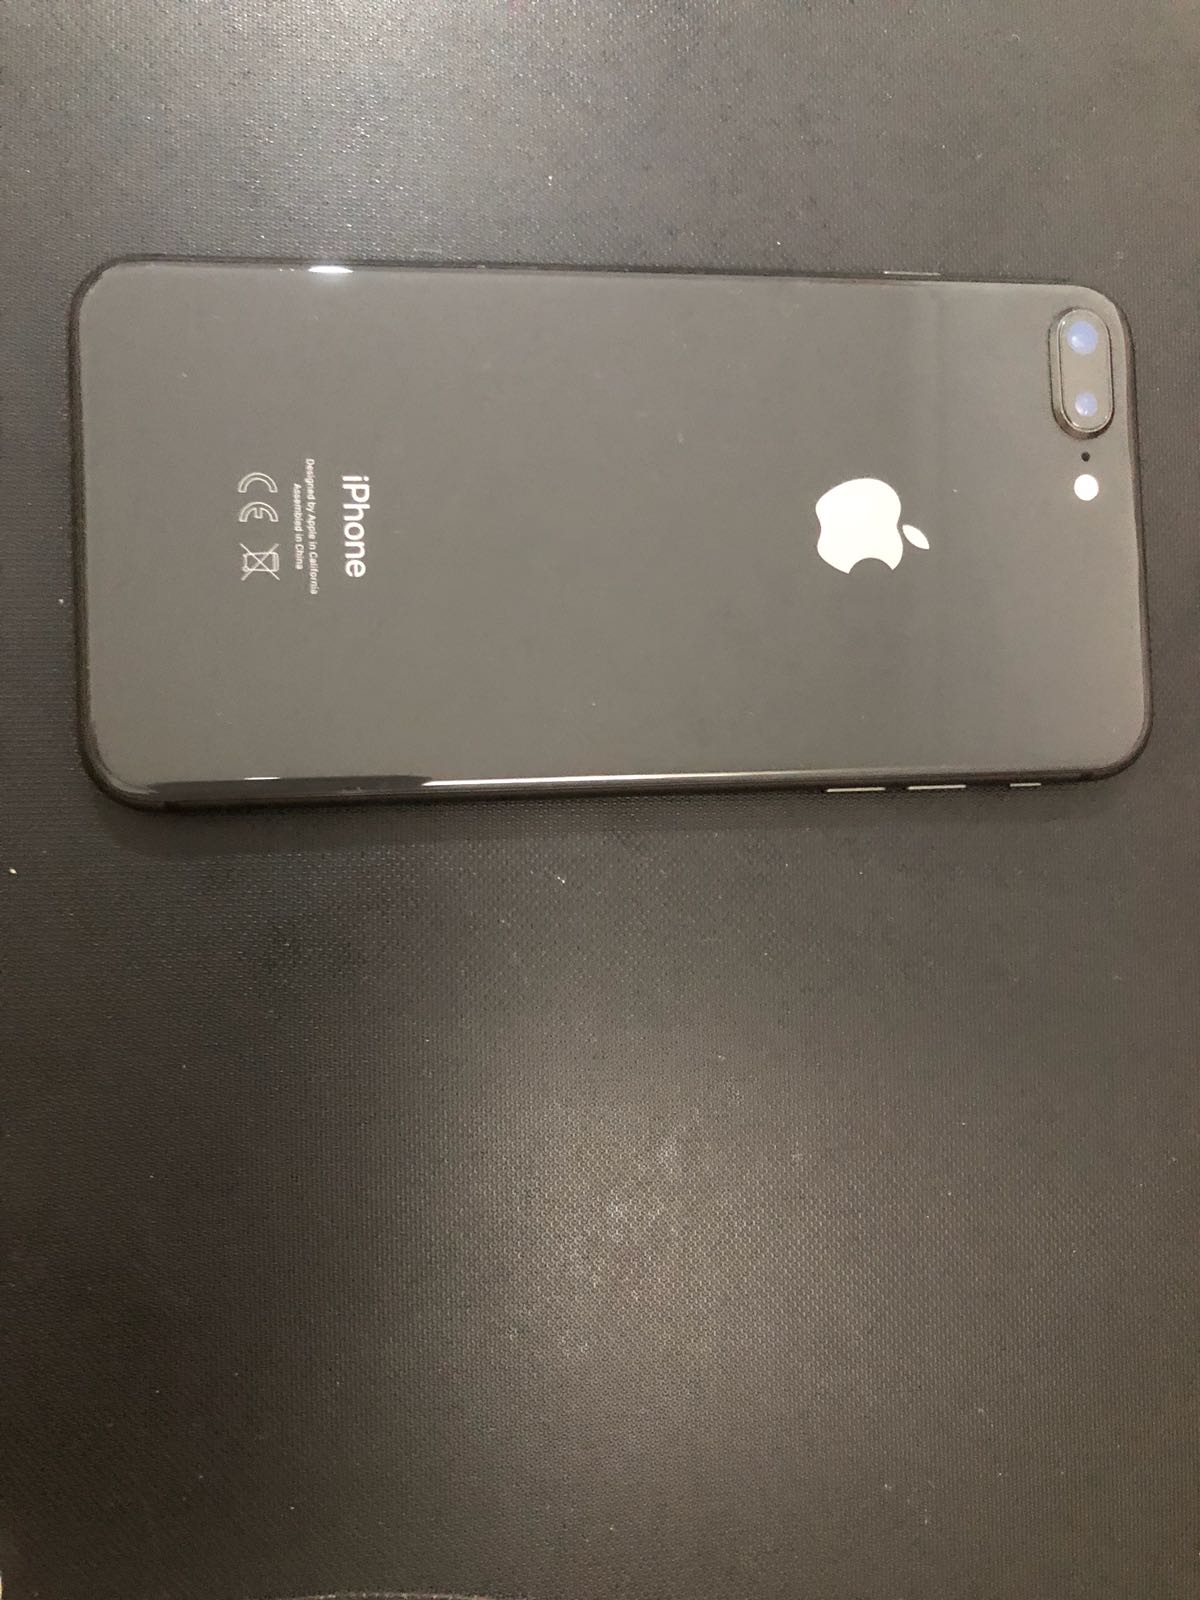 Iphone 8 plus black 64gb